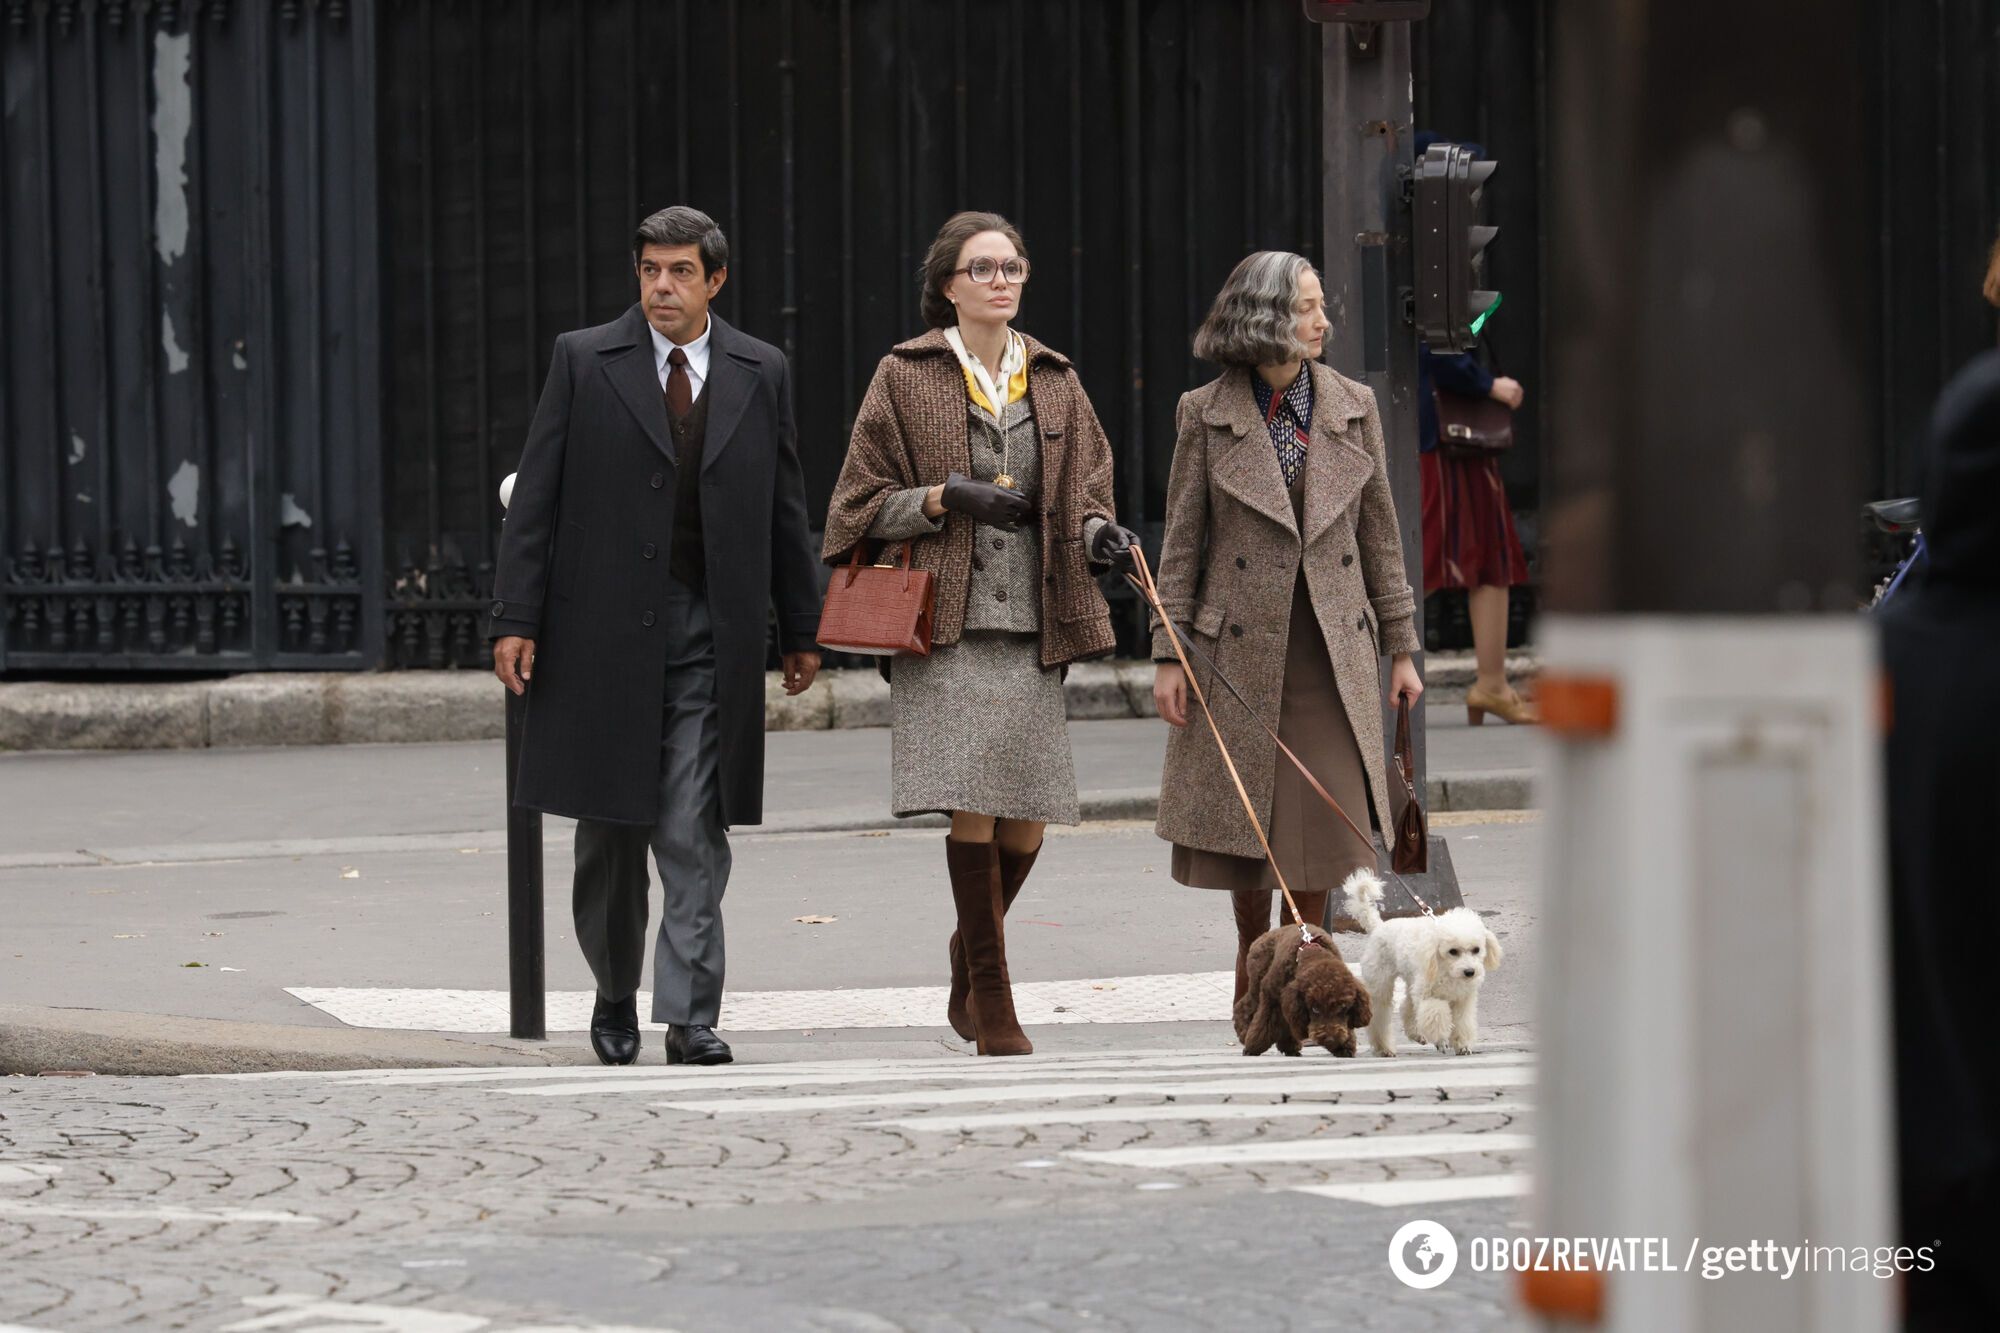 W grubych okularach i staromodnych ubraniach: Jolie została zauważona w Paryżu w nowej stylizacji. Zdjęcie